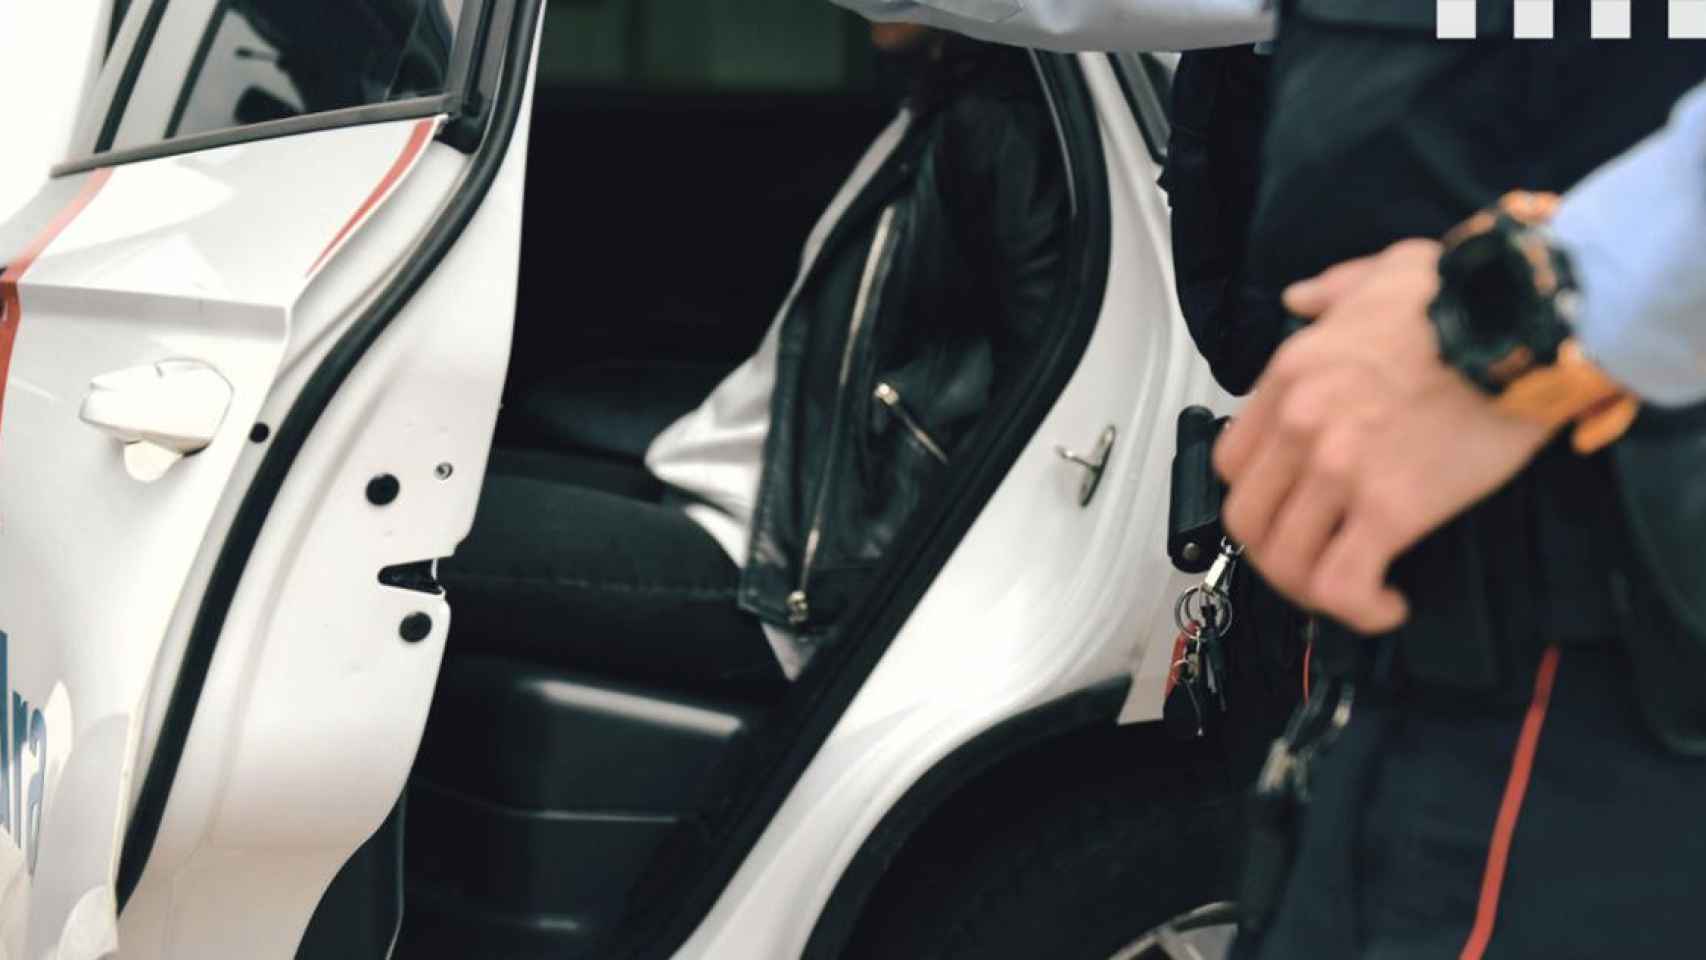 Los Mossos custodian un coche policial con un criminal en su interior / MOSSOS